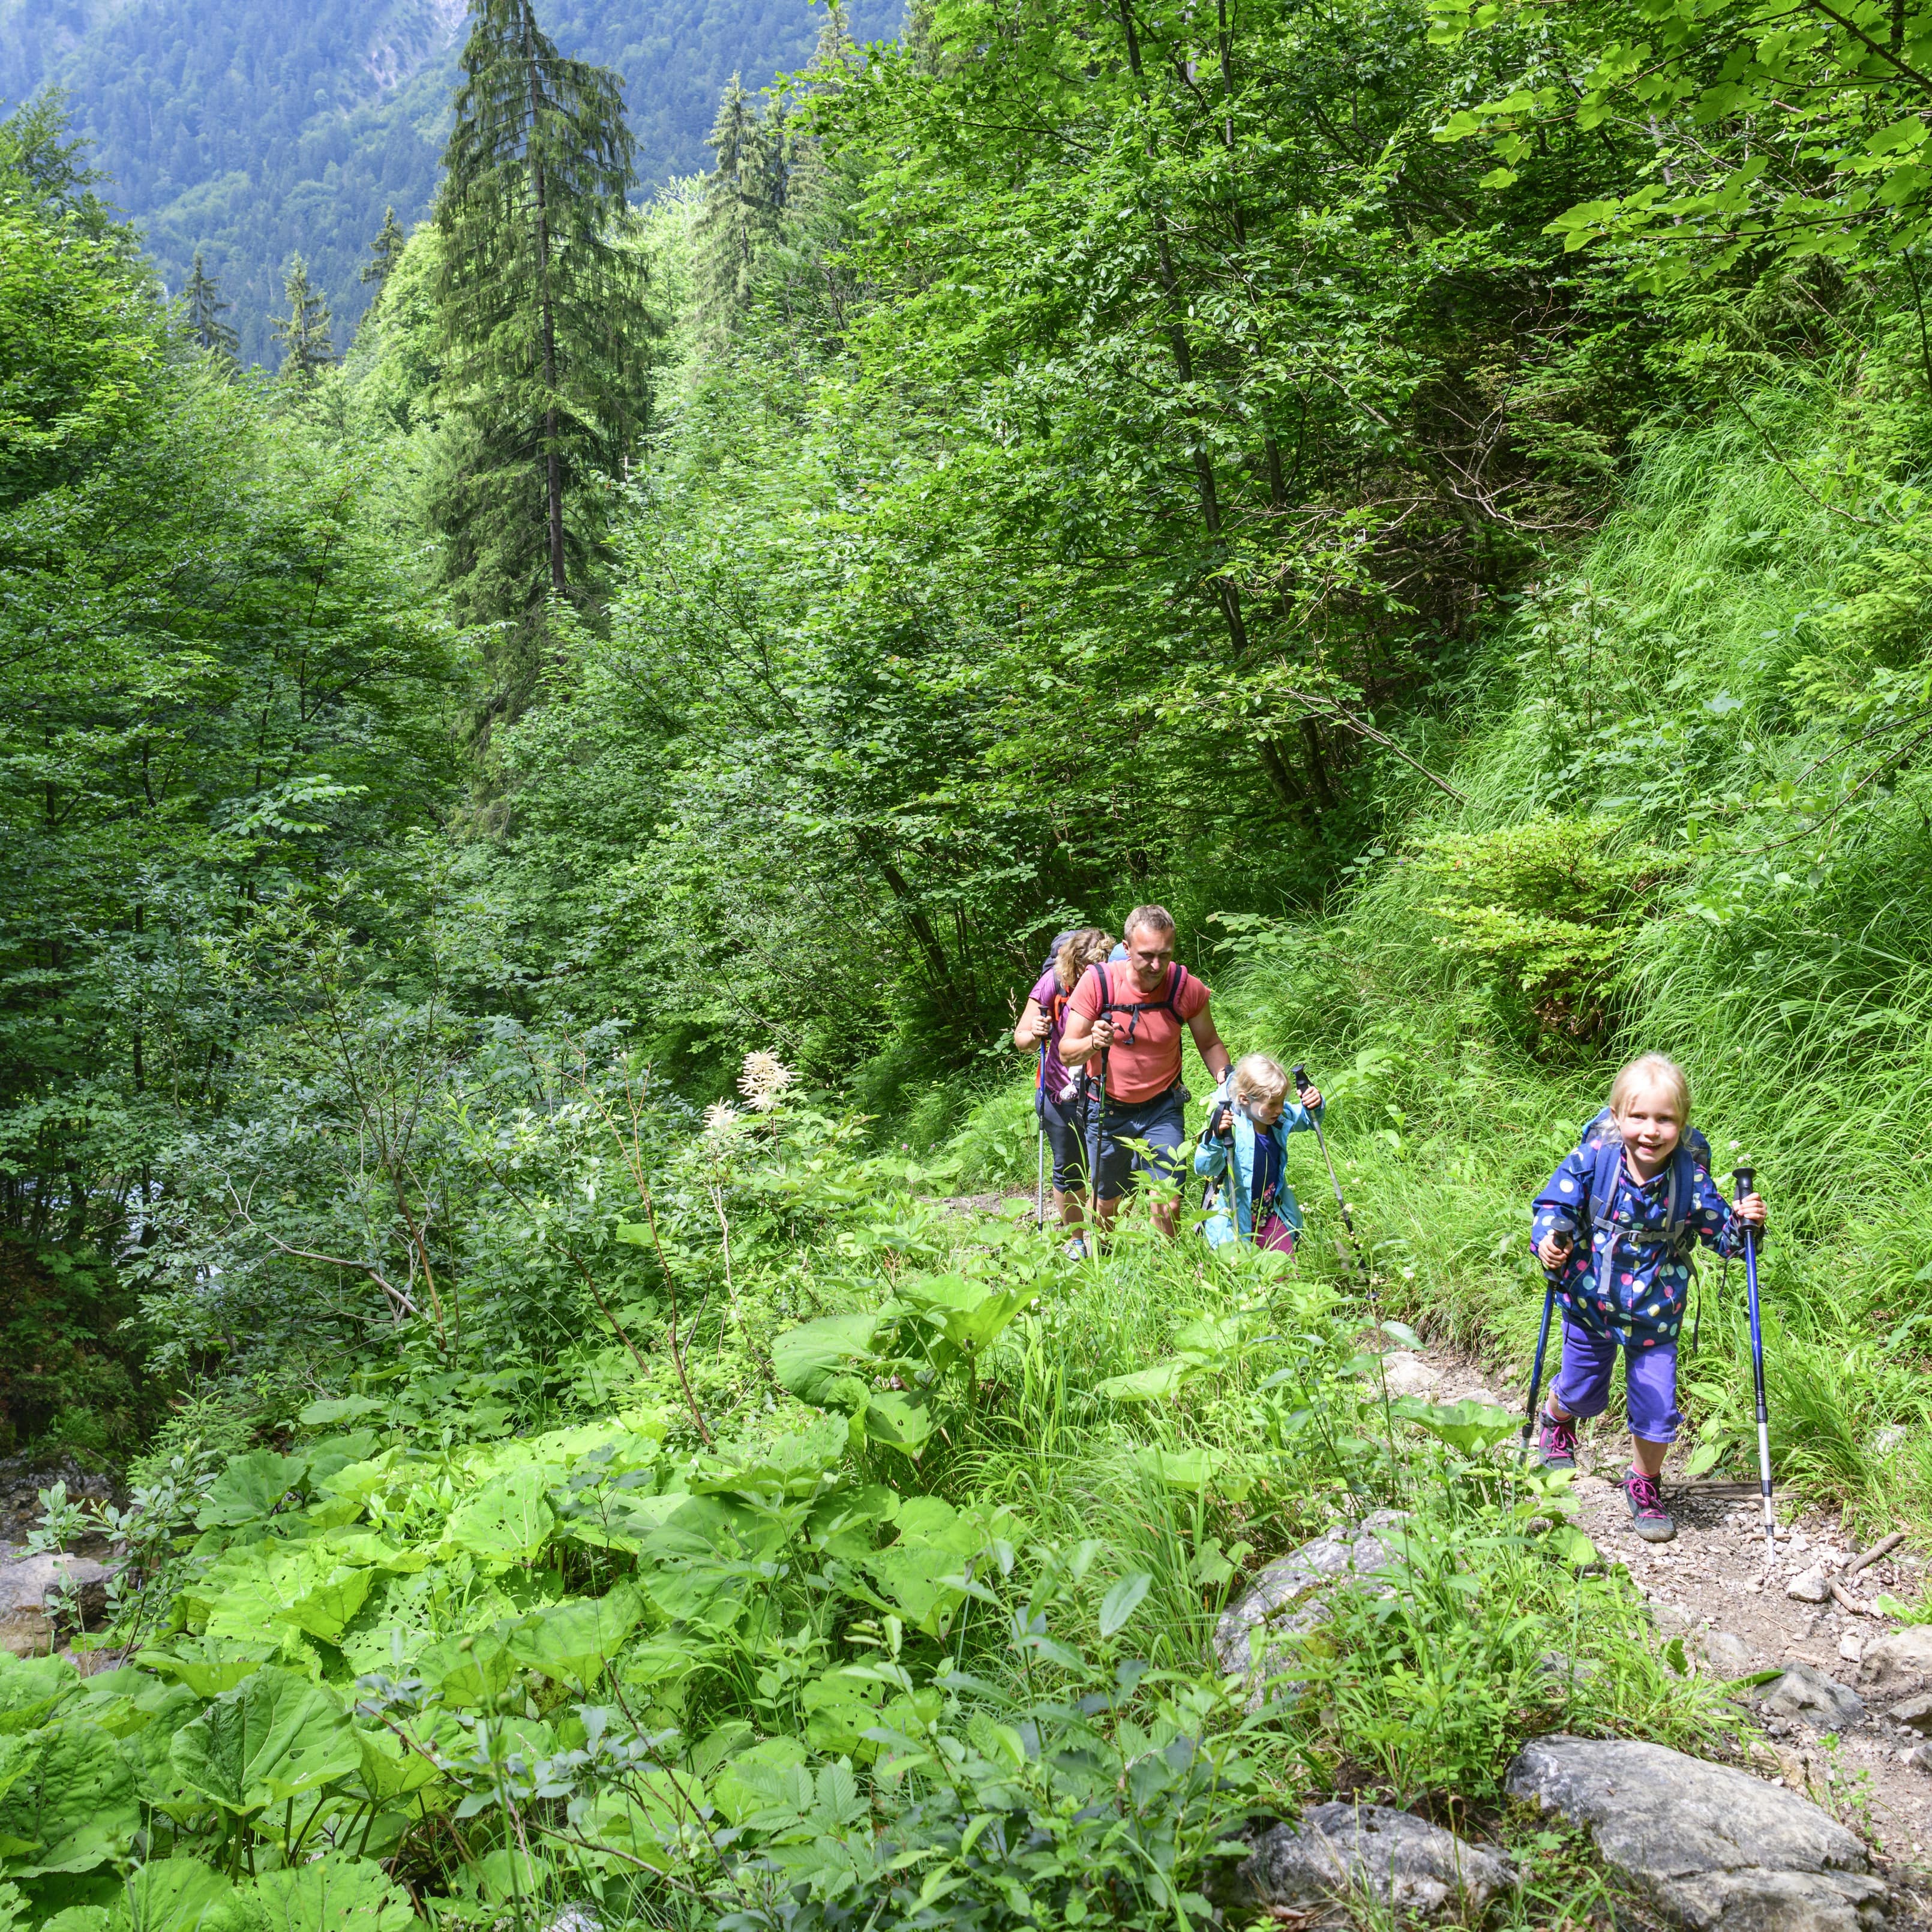 Familie mit 2 Kindern auf einem schmalen Wanderweg in einer bewaldeten Gegend.